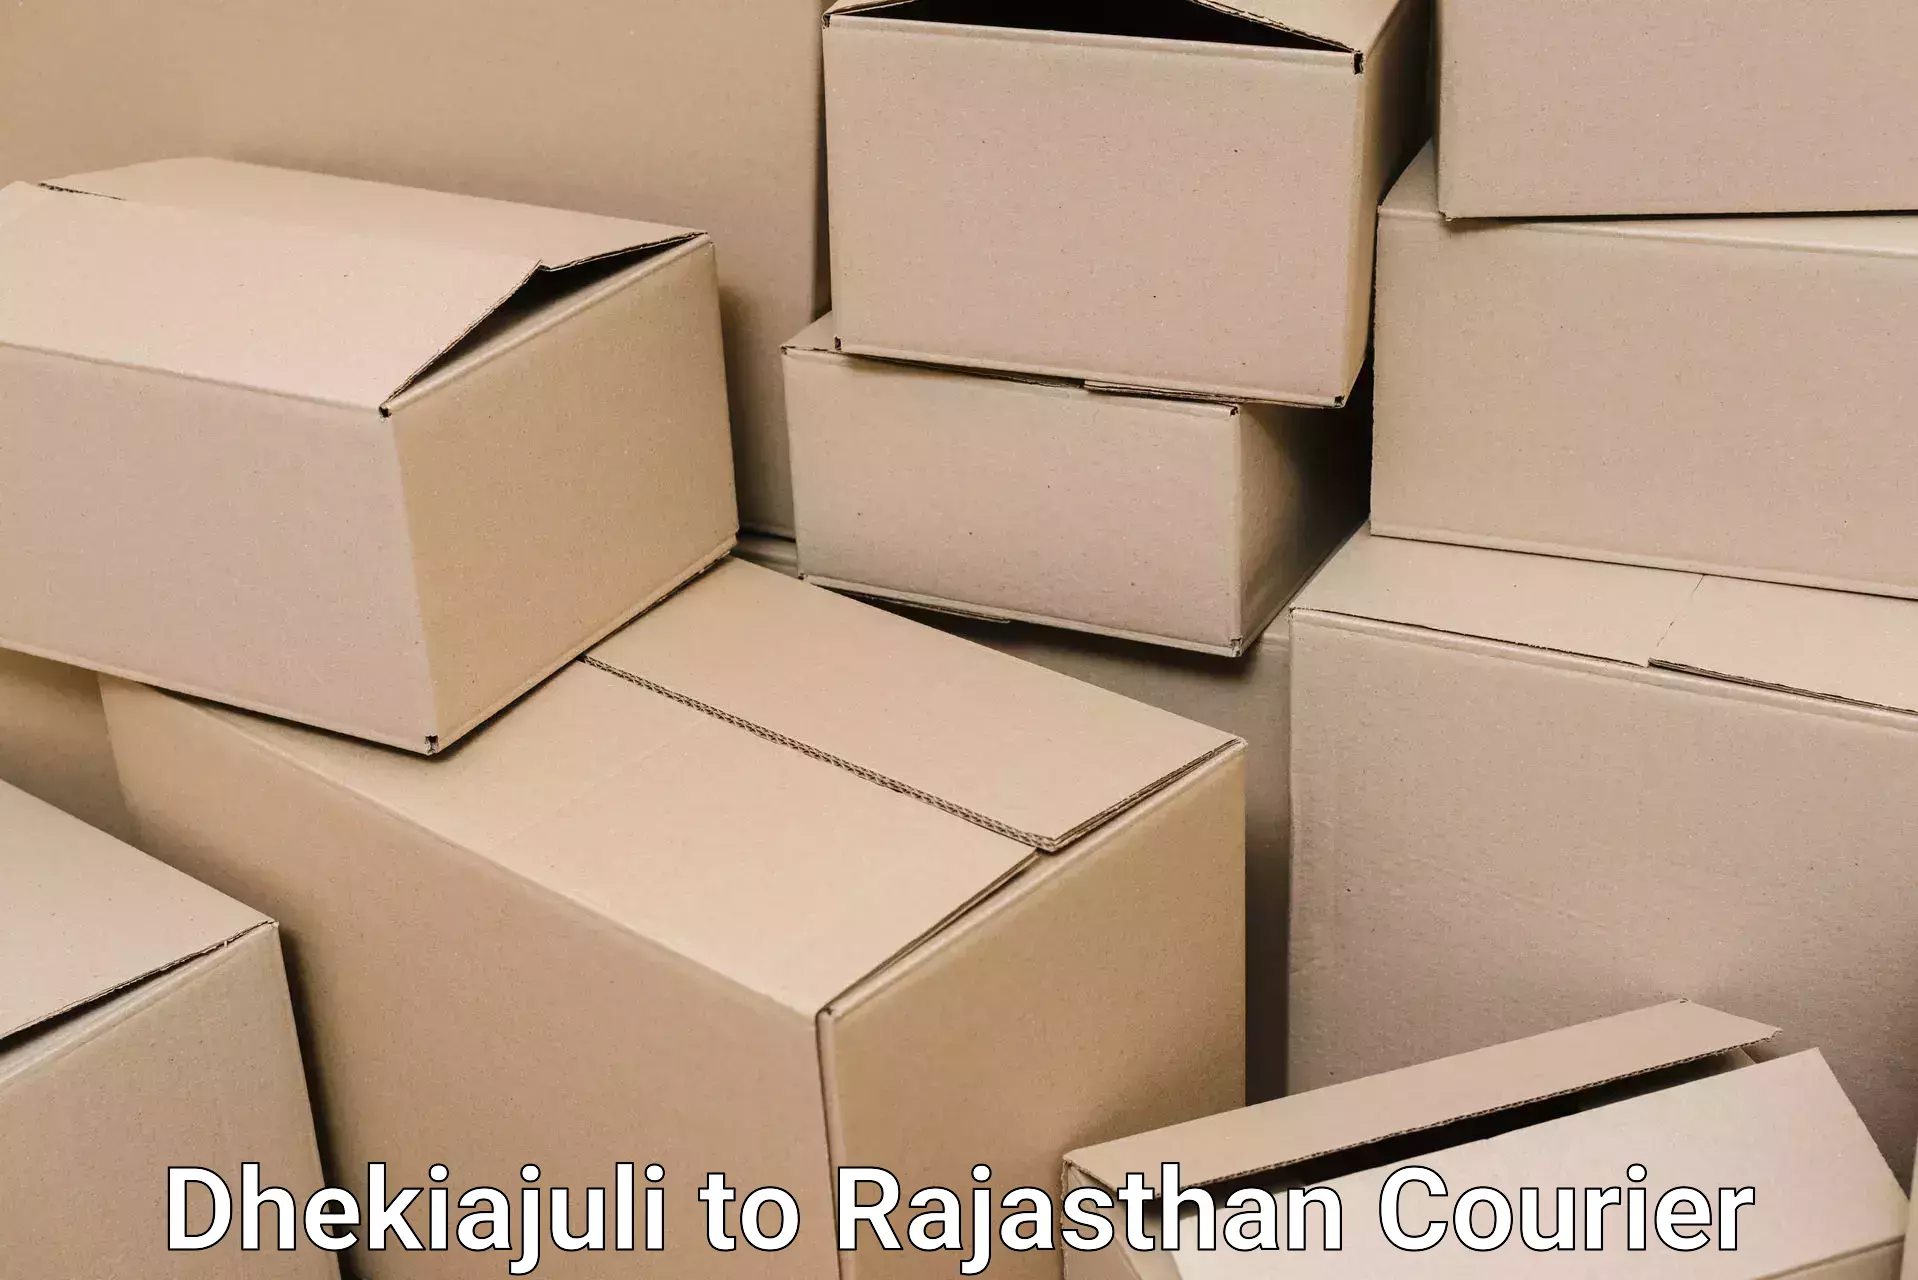 Efficient moving strategies Dhekiajuli to Rajasthan